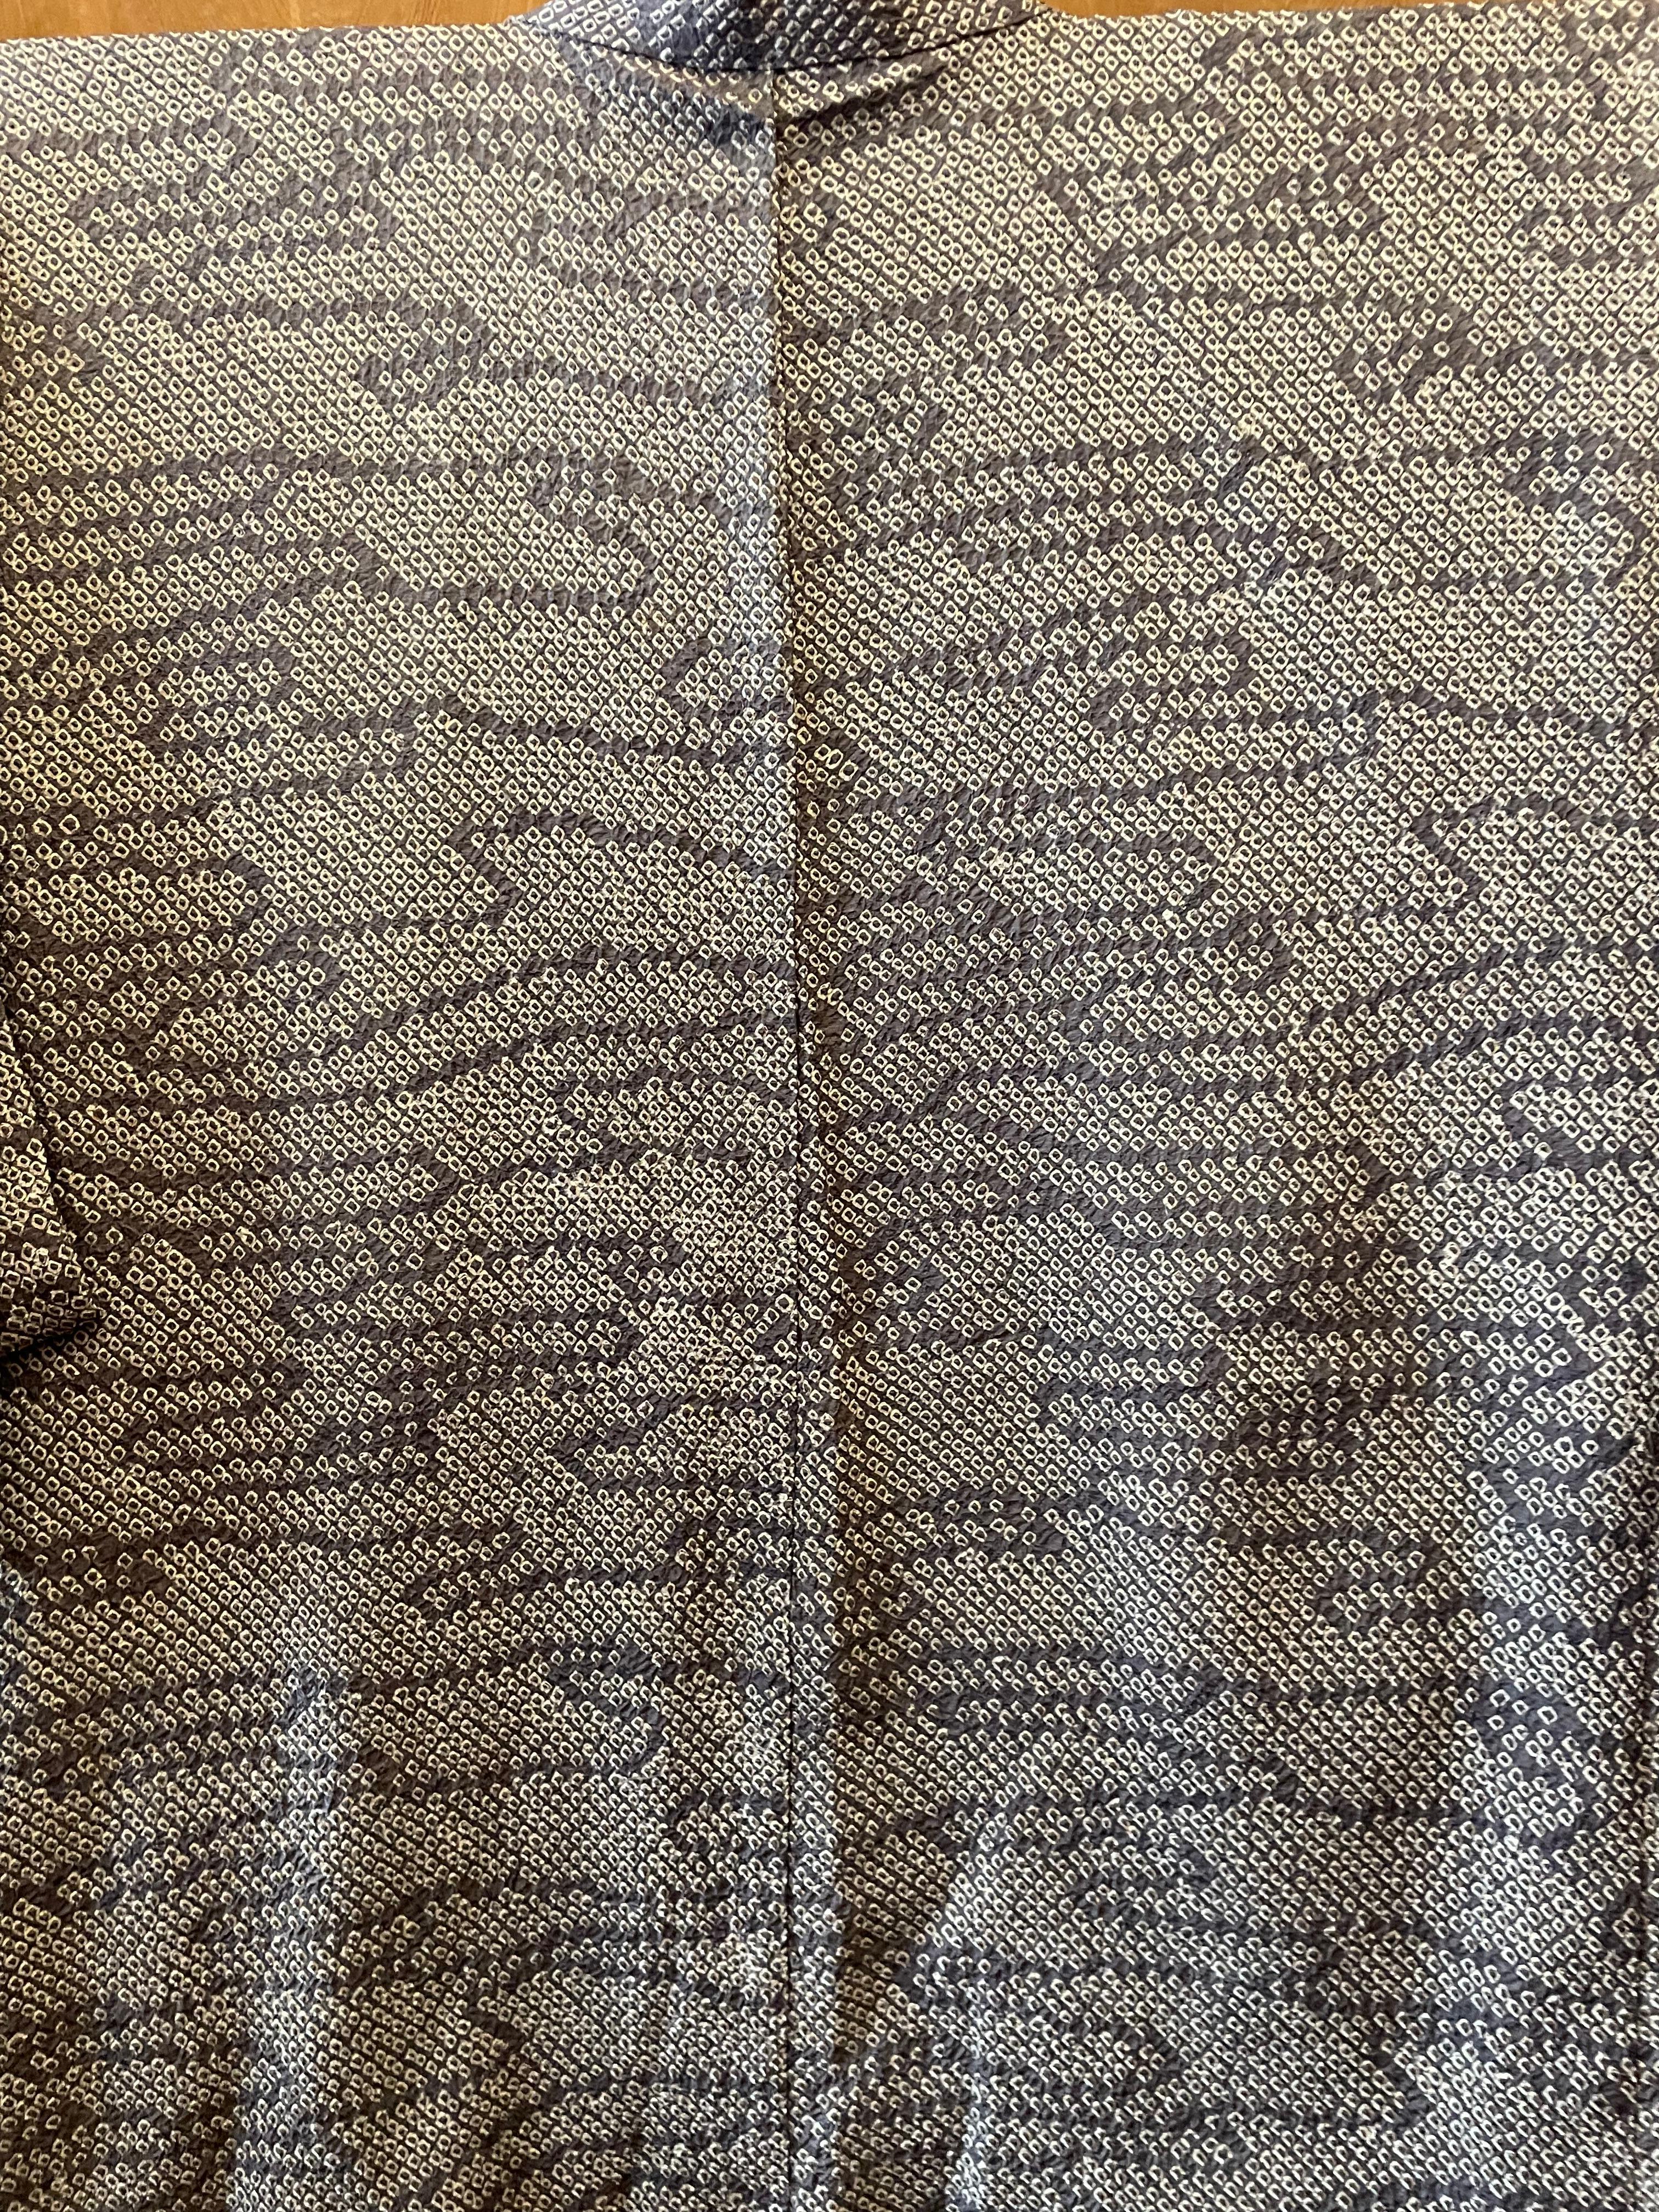 Japanese Silk Gray Haori Jacket Shibori Technique 1970s Showa For Sale 4